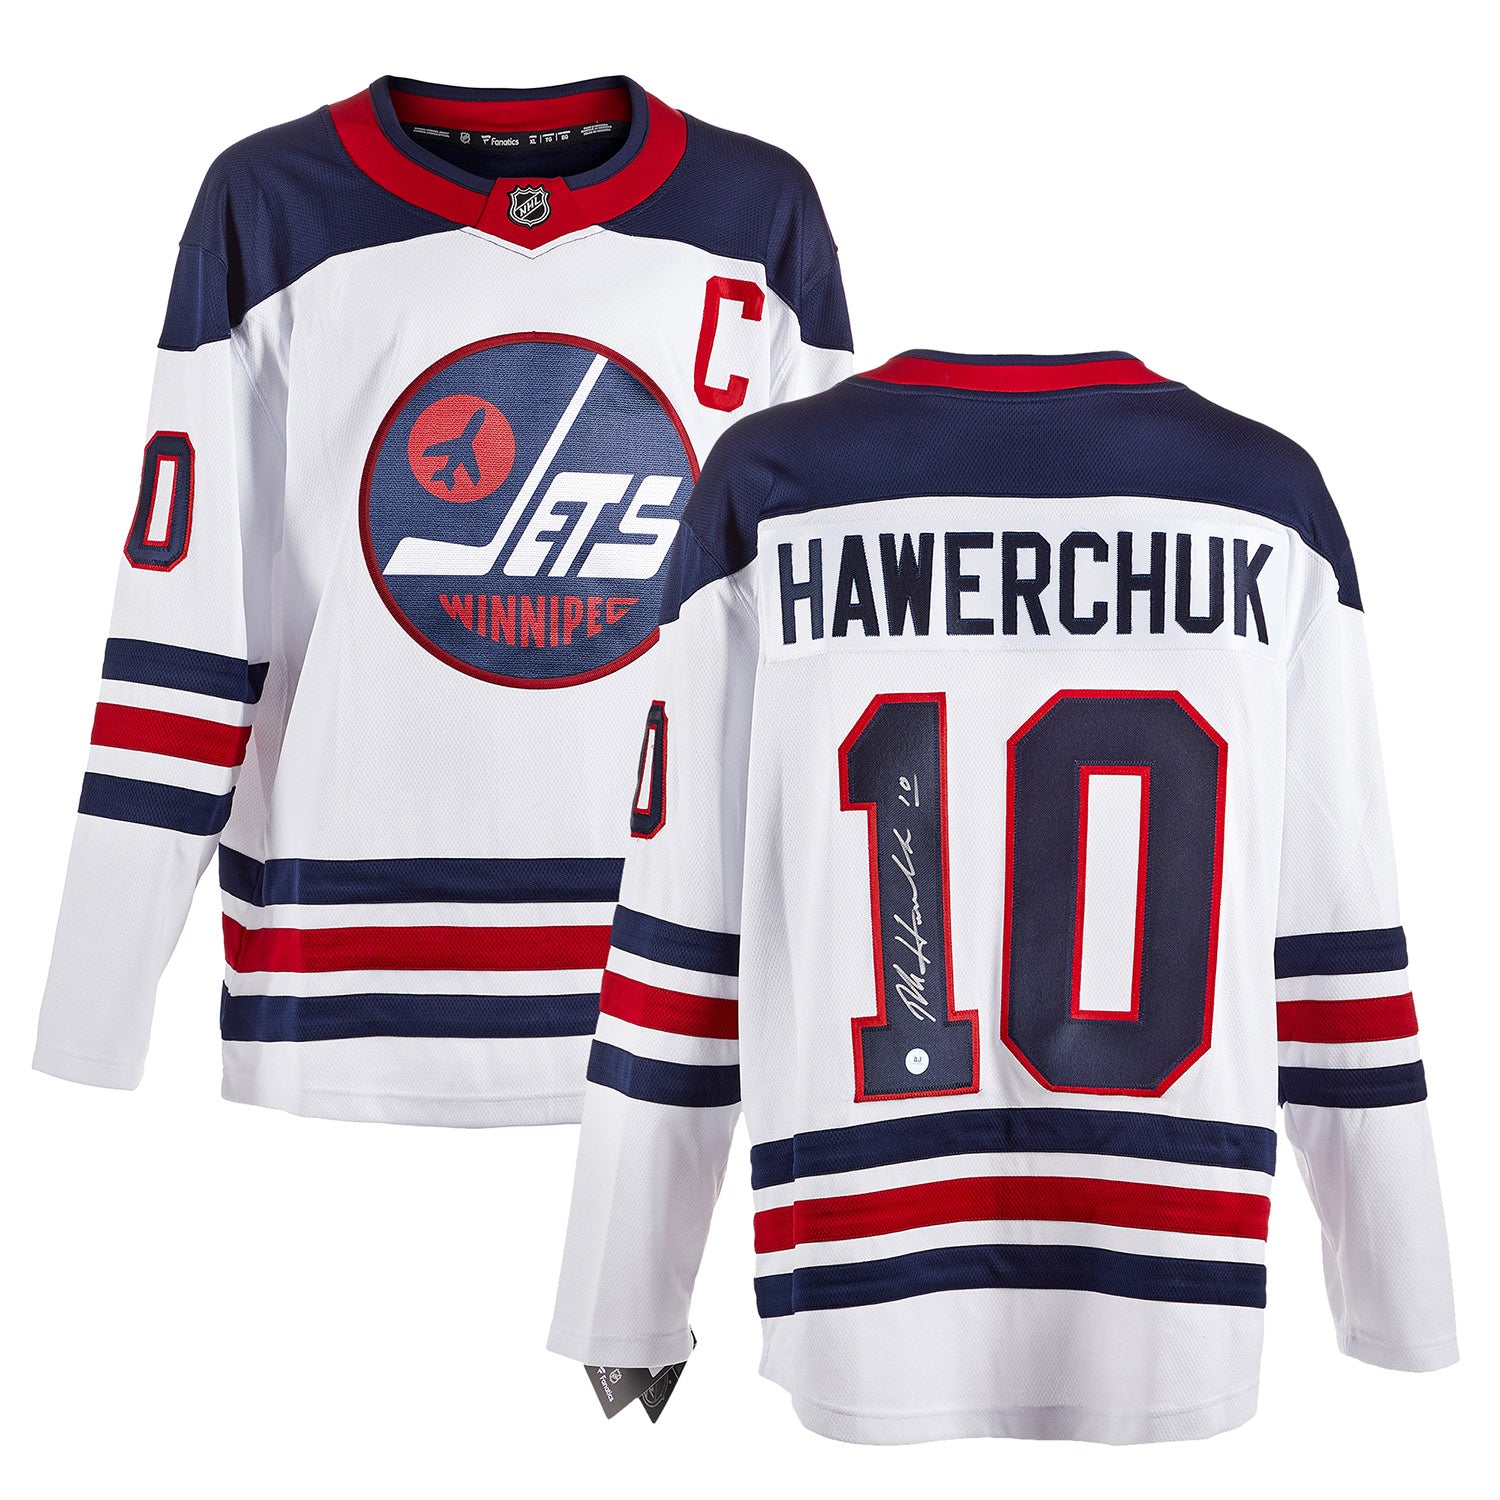 Dale Hawerchuk Winnipeg Jets Signed Heritage Fanatics Jersey